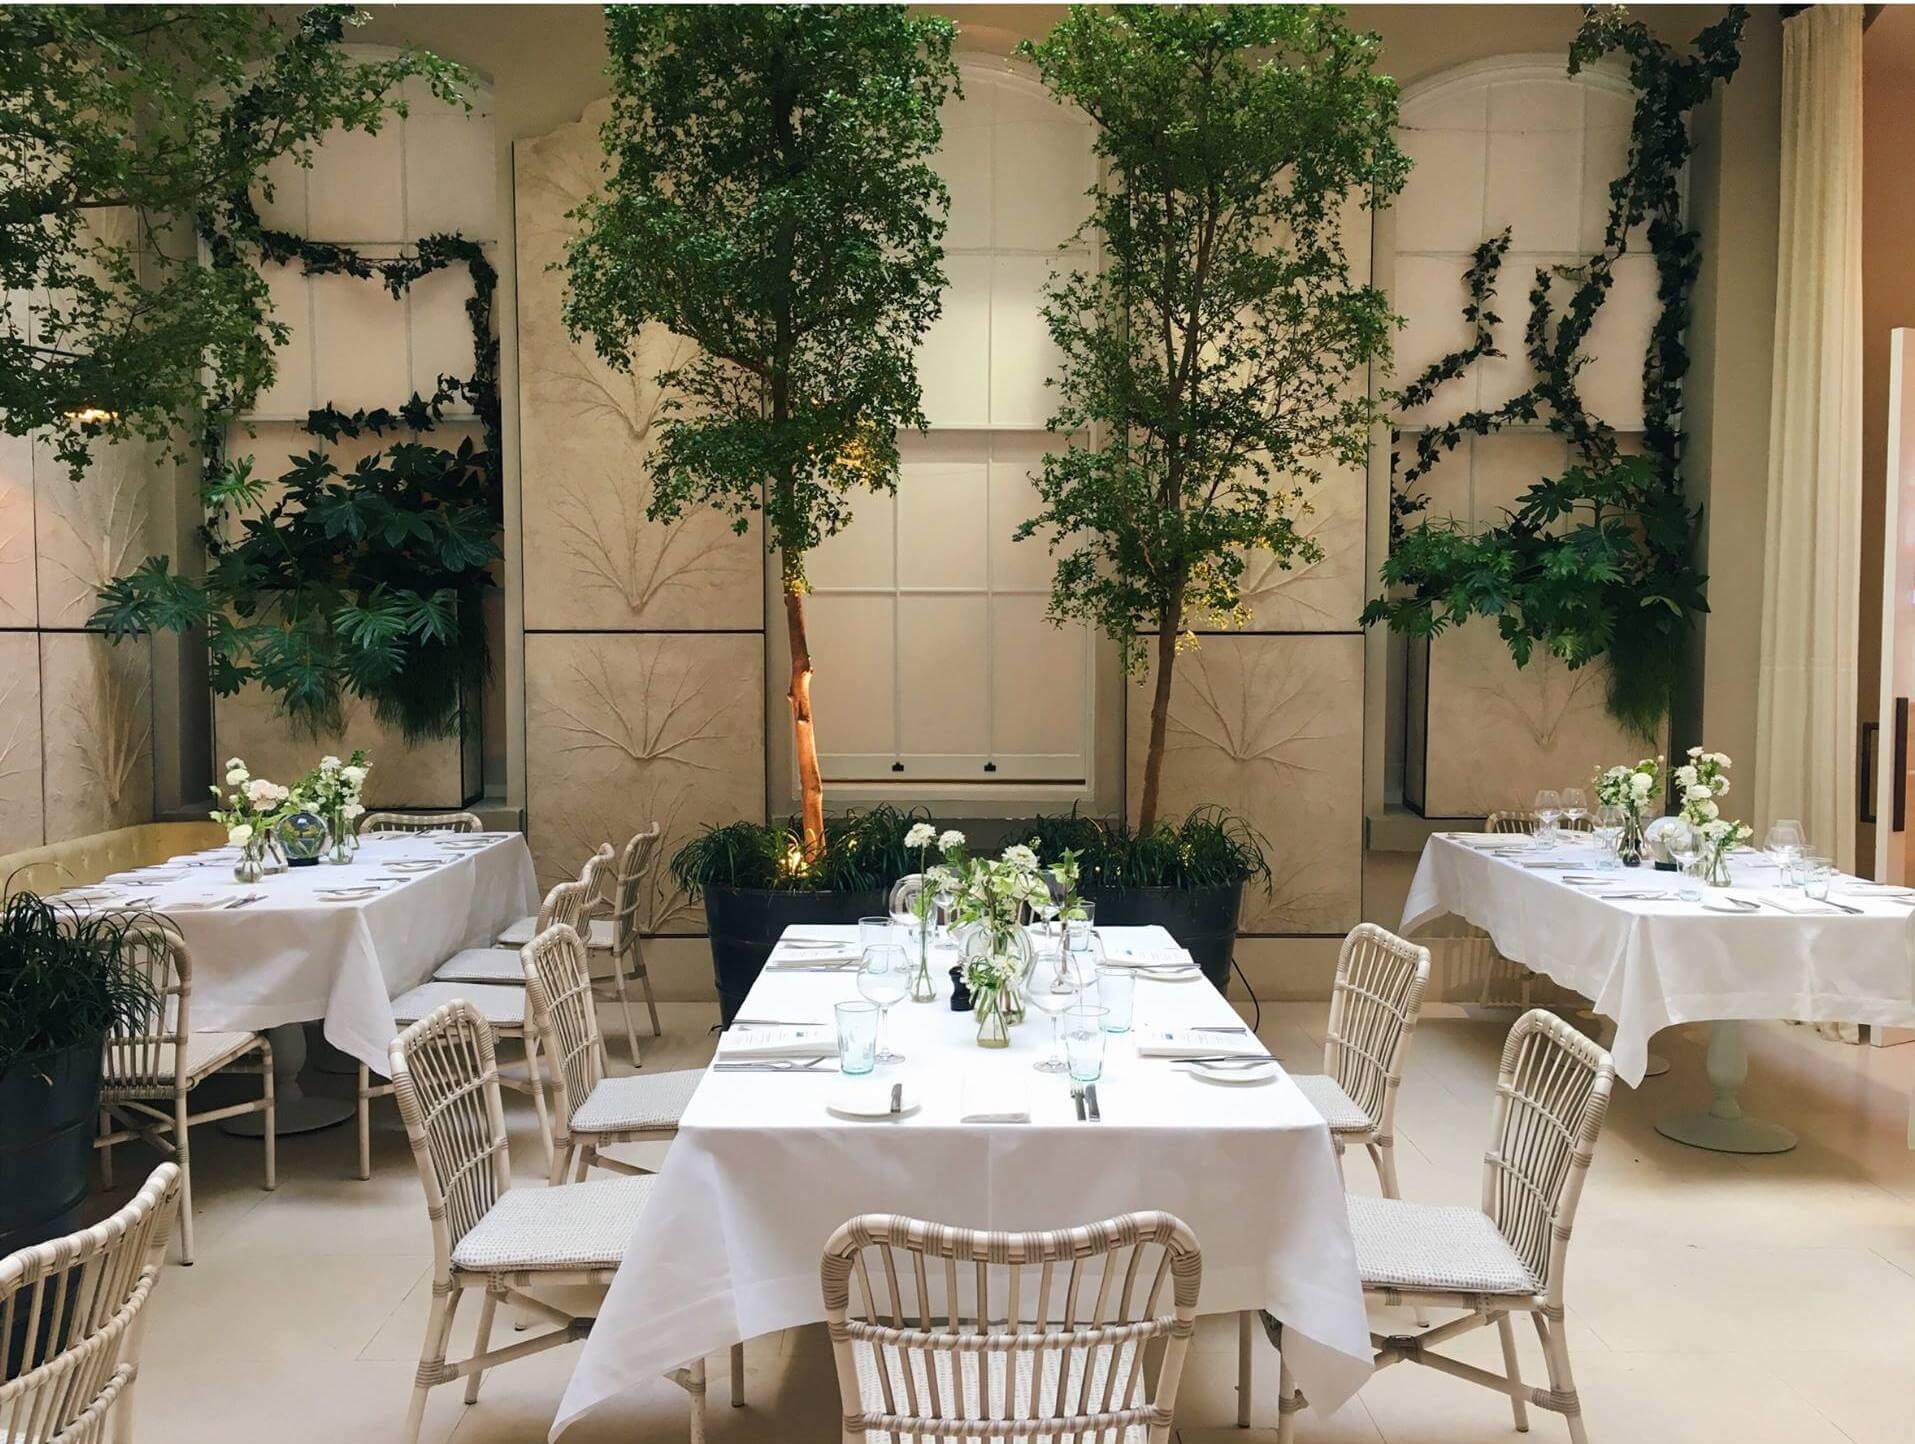 Spring Restaurant London - The world's best restaurant interior designs